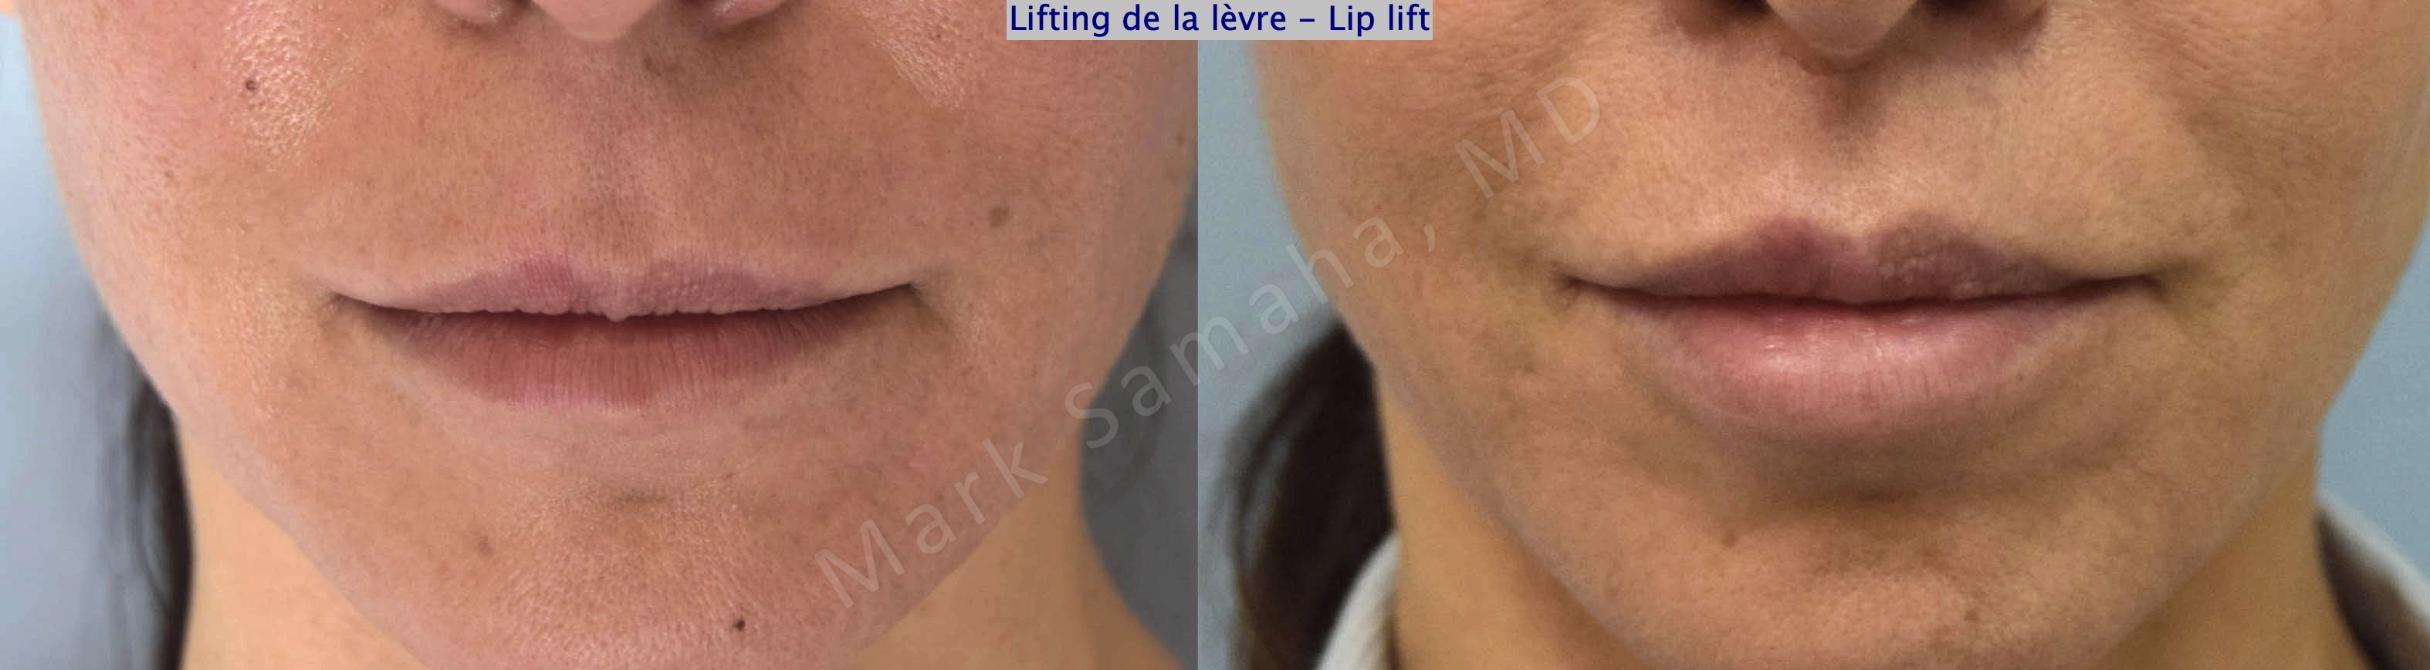 Before & After Lip Lift / Lifting de la lèvre supérieure Case 179 Front View in Mount Royal, QC